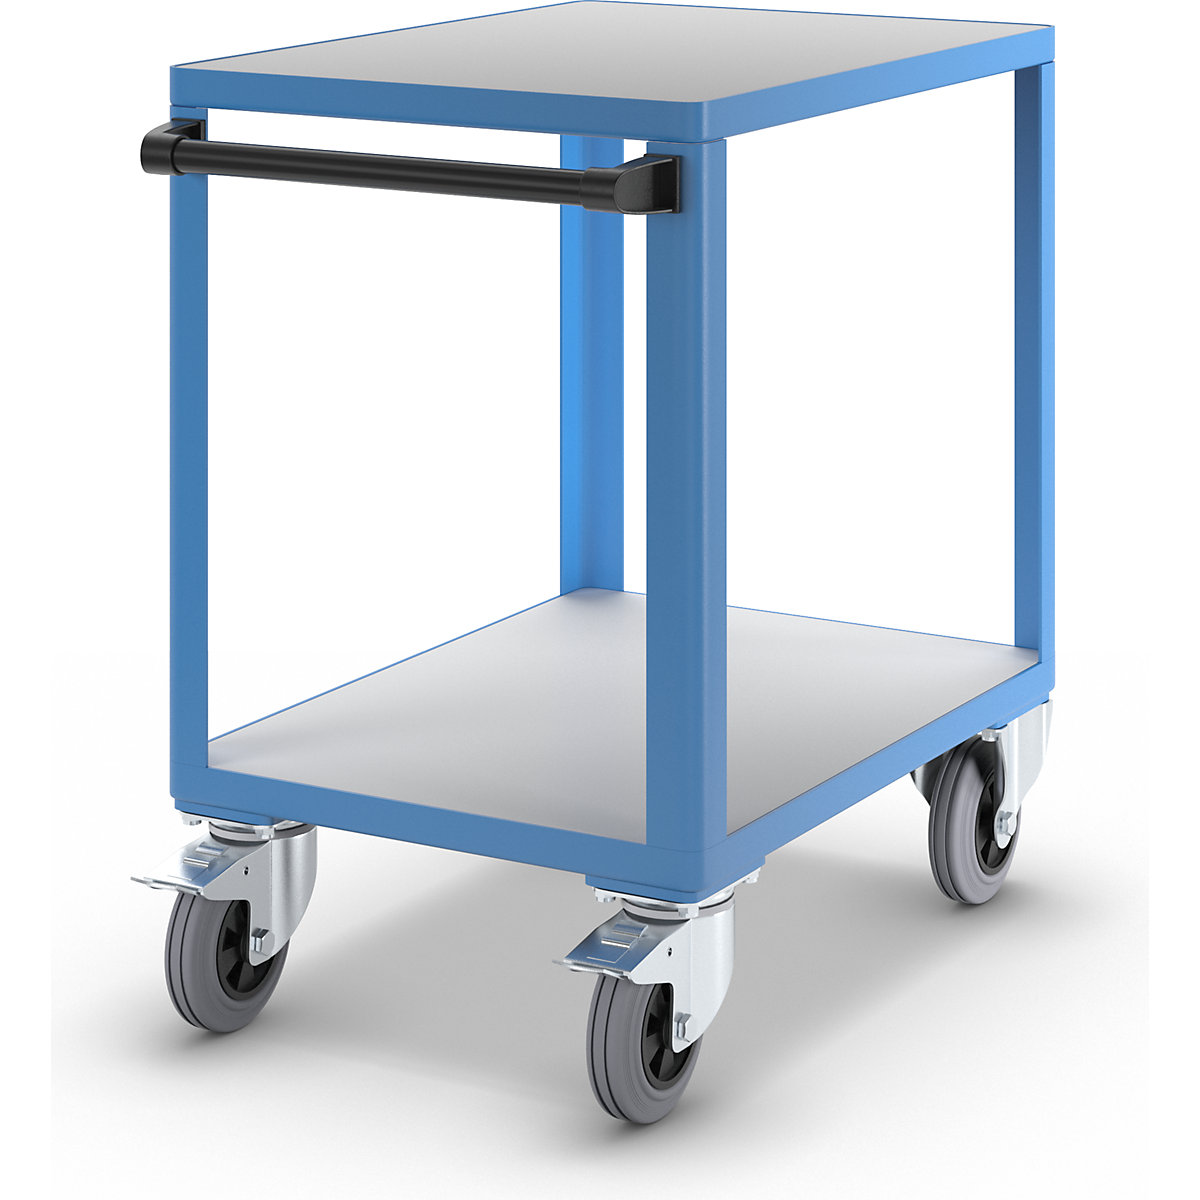 Industriële tafelwagen – eurokraft pro, laadvlak l x b = 750 x 550 mm, lichtblauw RAL 5012-9